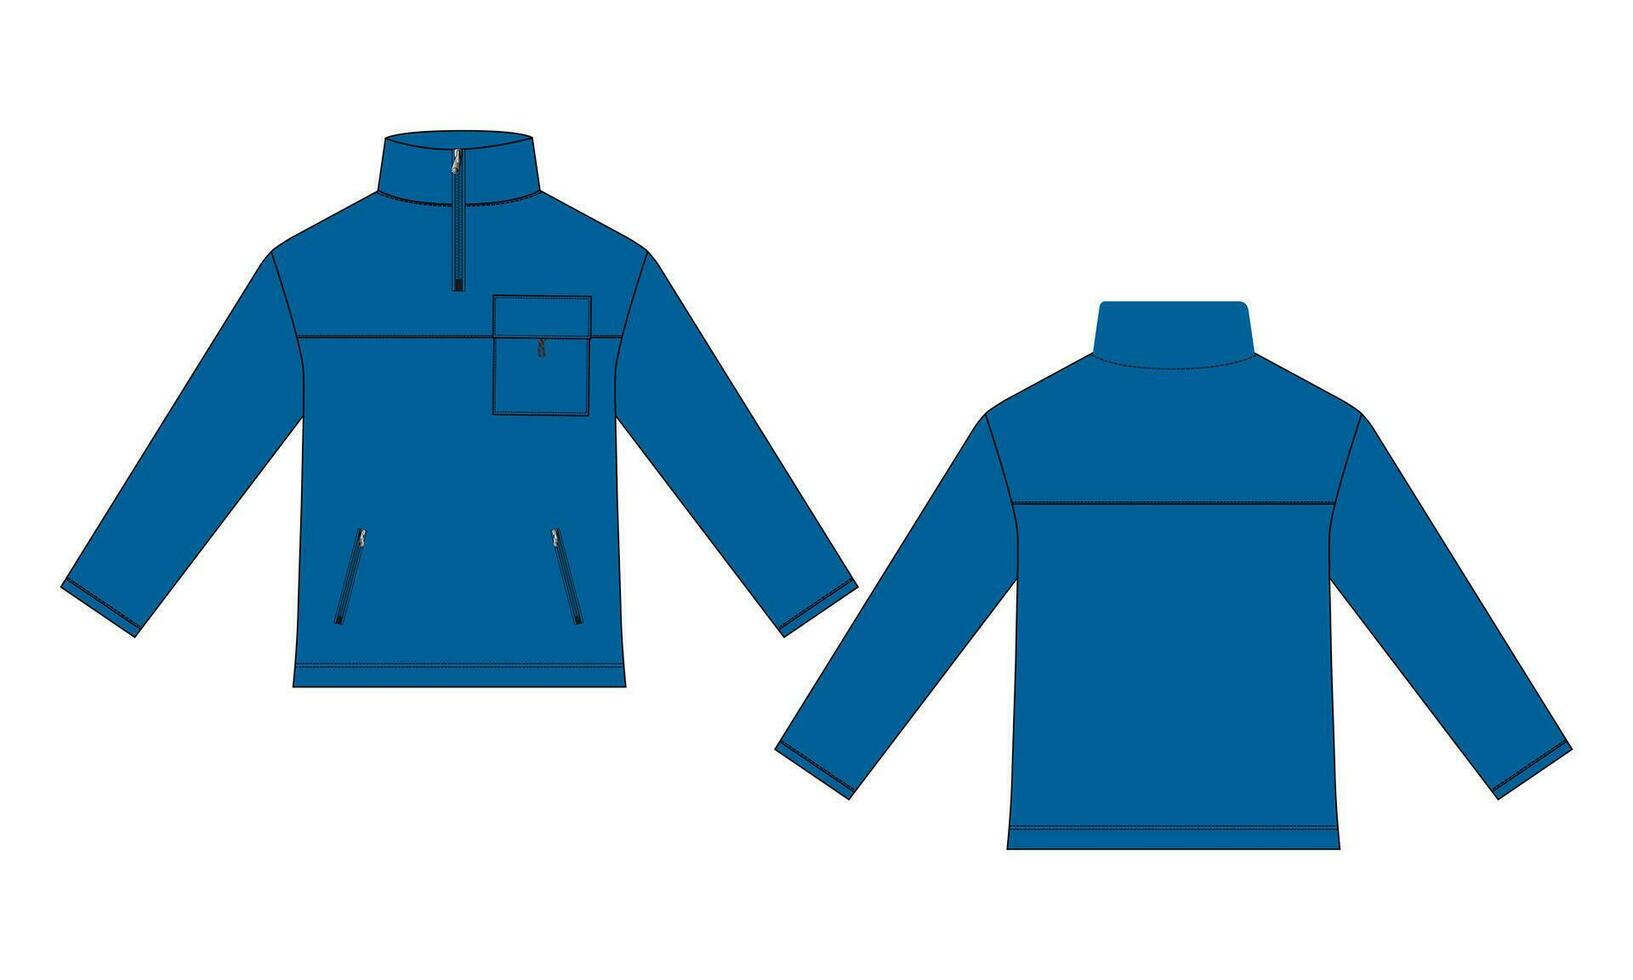 giacca a maniche lunghe con tasca e cerniera moda tecnica disegno piatto illustrazione vettoriale modello vista anteriore e posteriore. giacca felpa in jersey di pile per uomo e bambino.